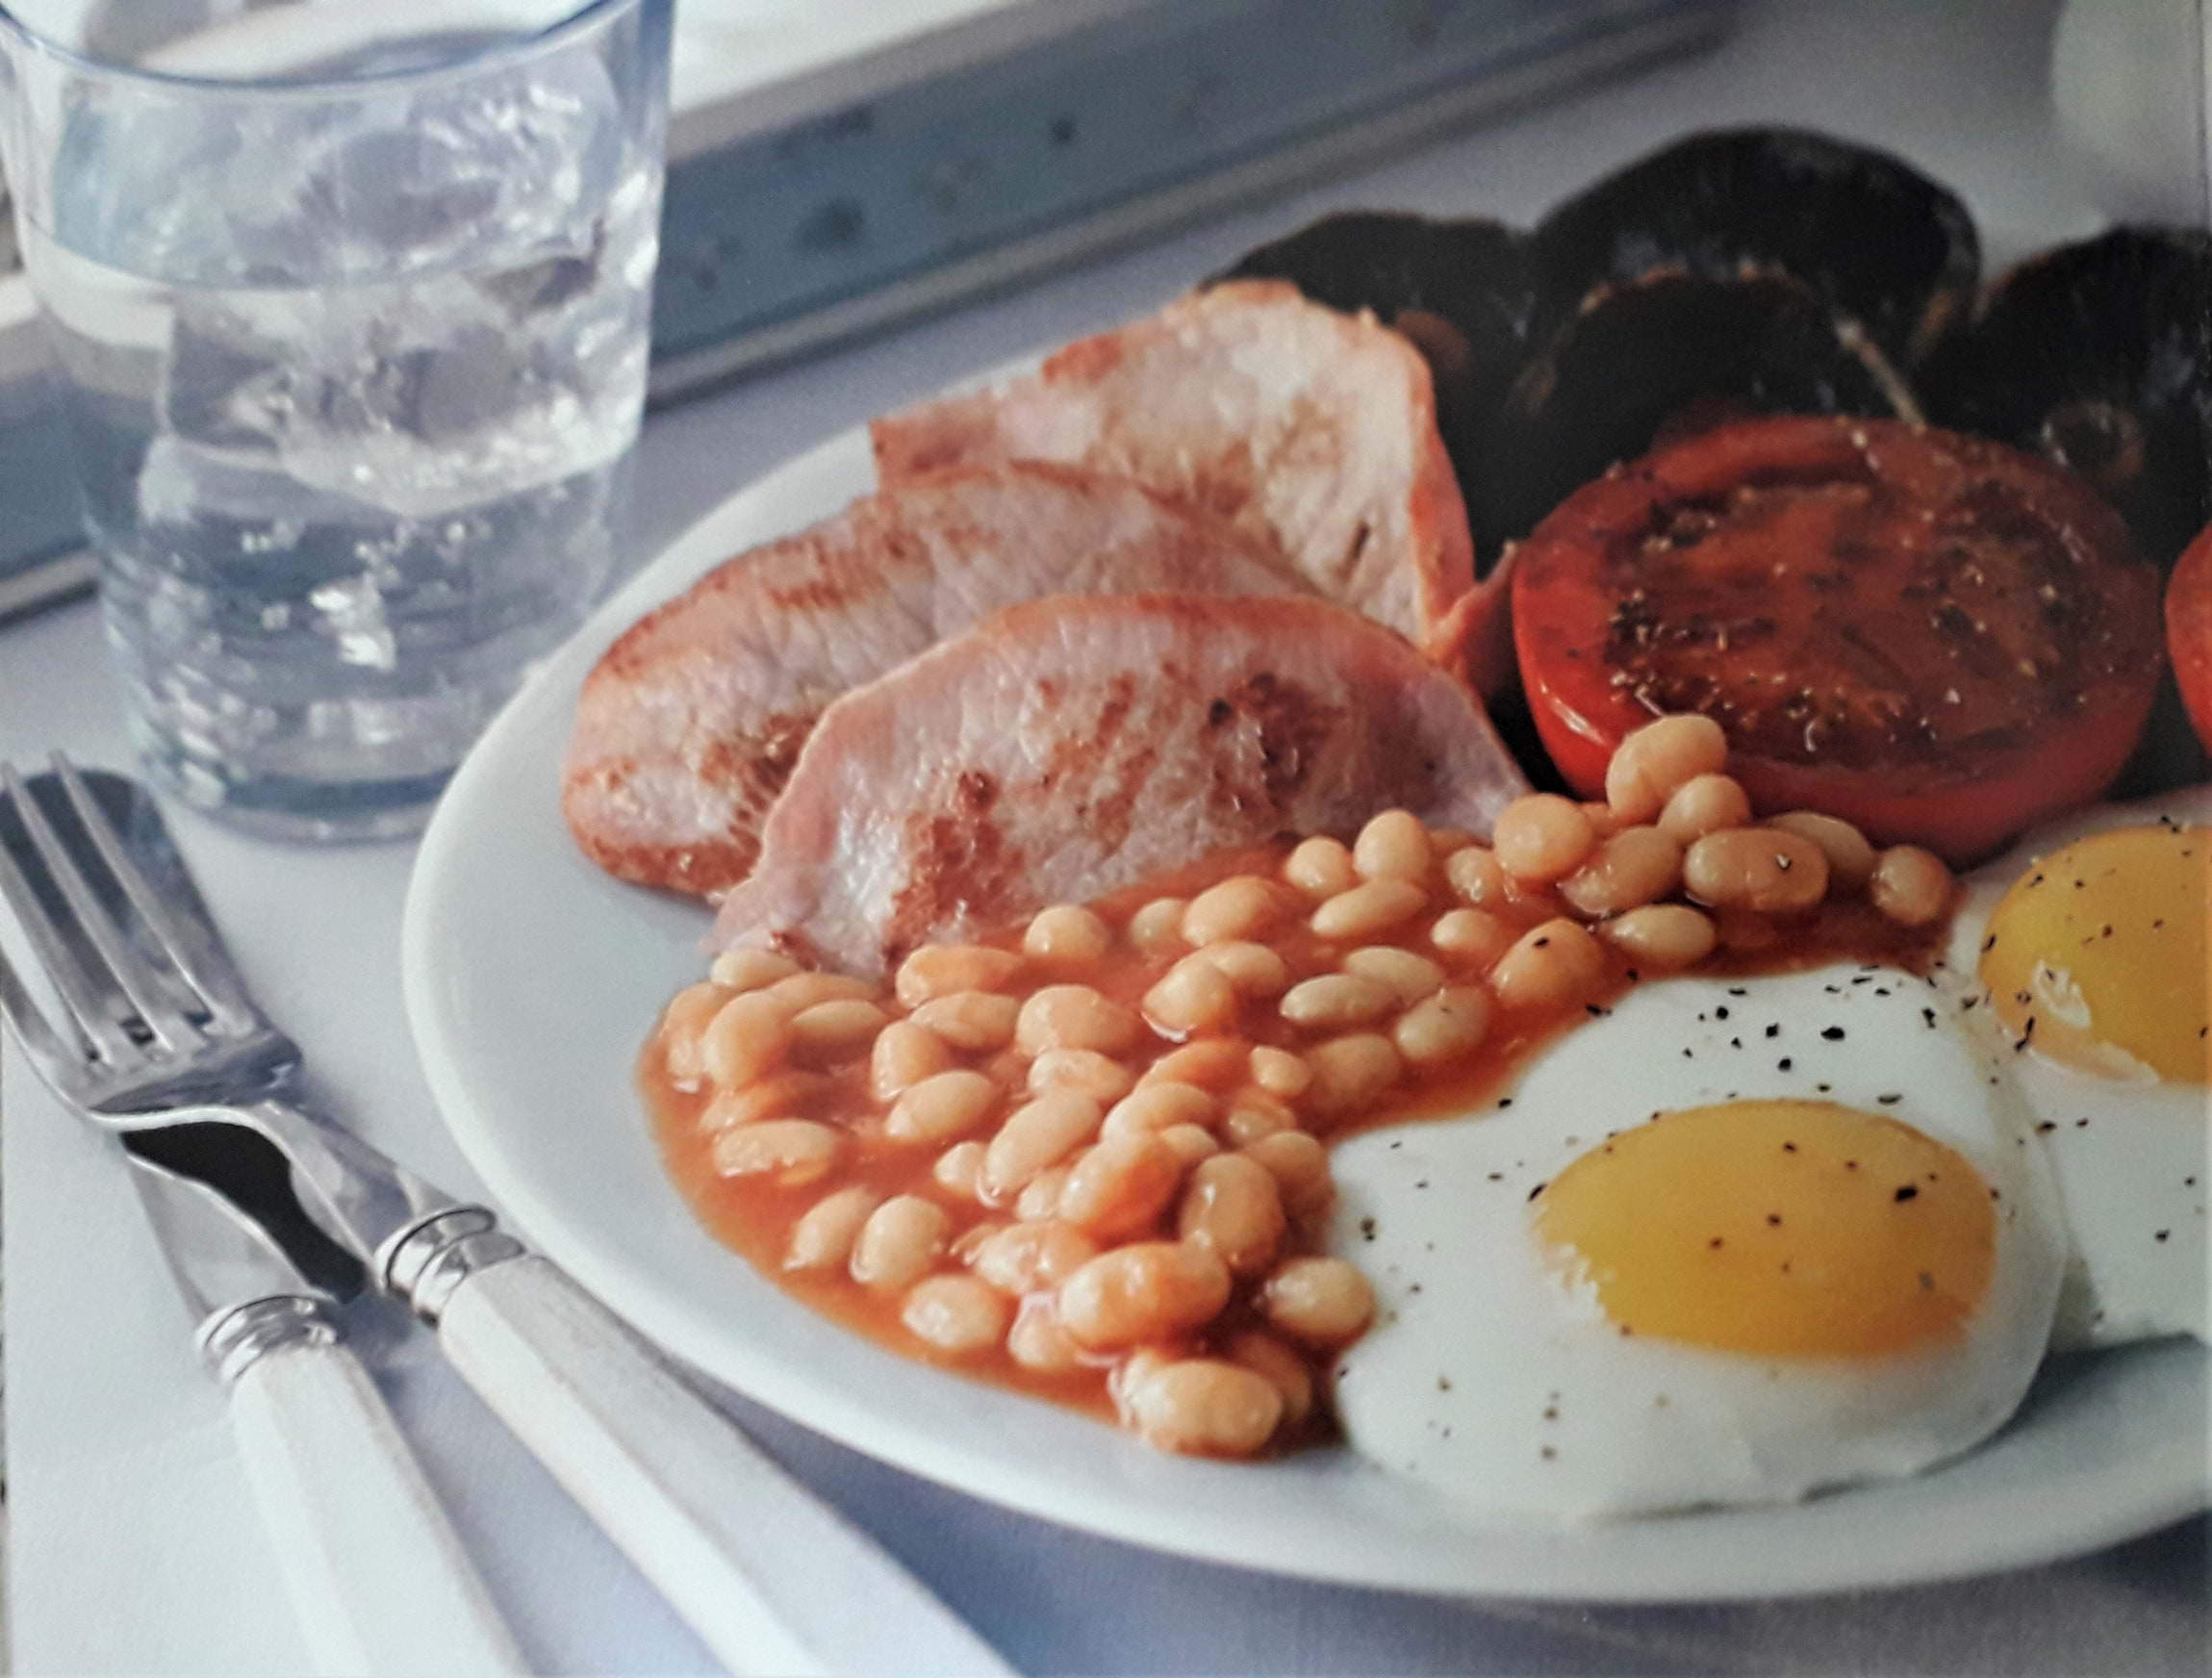 The best full English breakfast in London